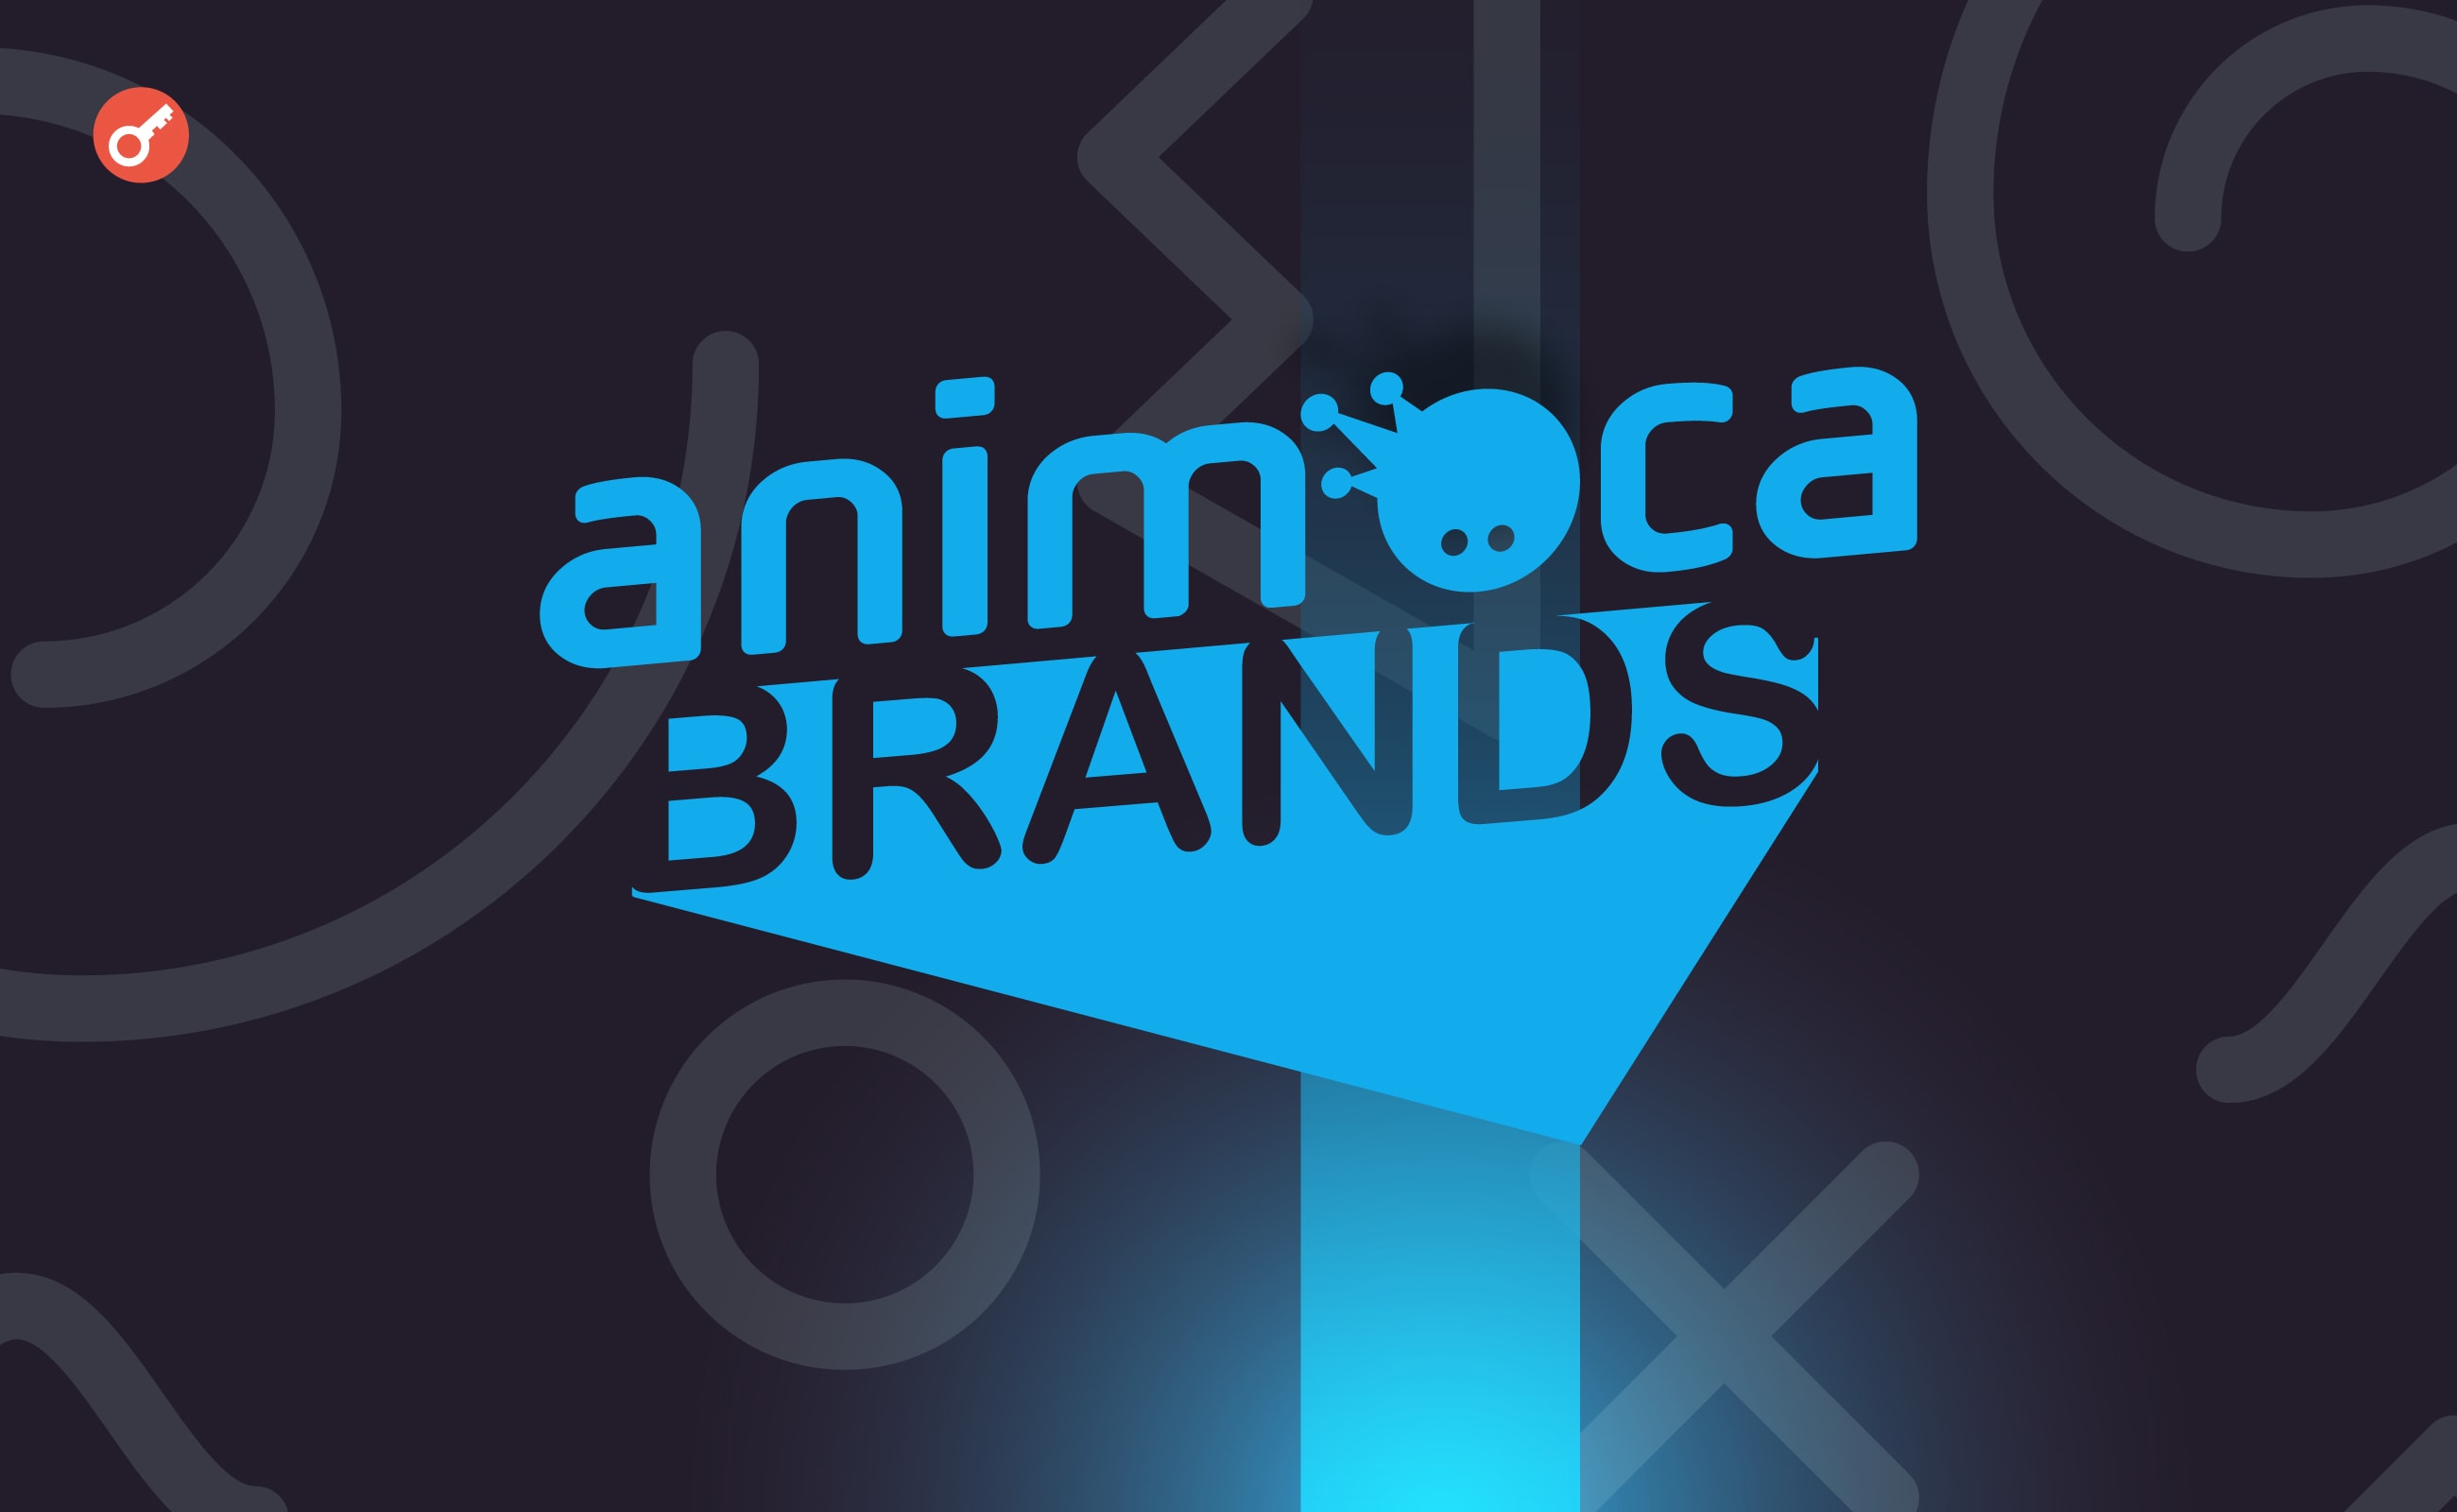 Anichess від Animoca Brands оголосила про партнерство з чемпіоном із шахів Магнусом Карлсеном. Головний колаж новини.